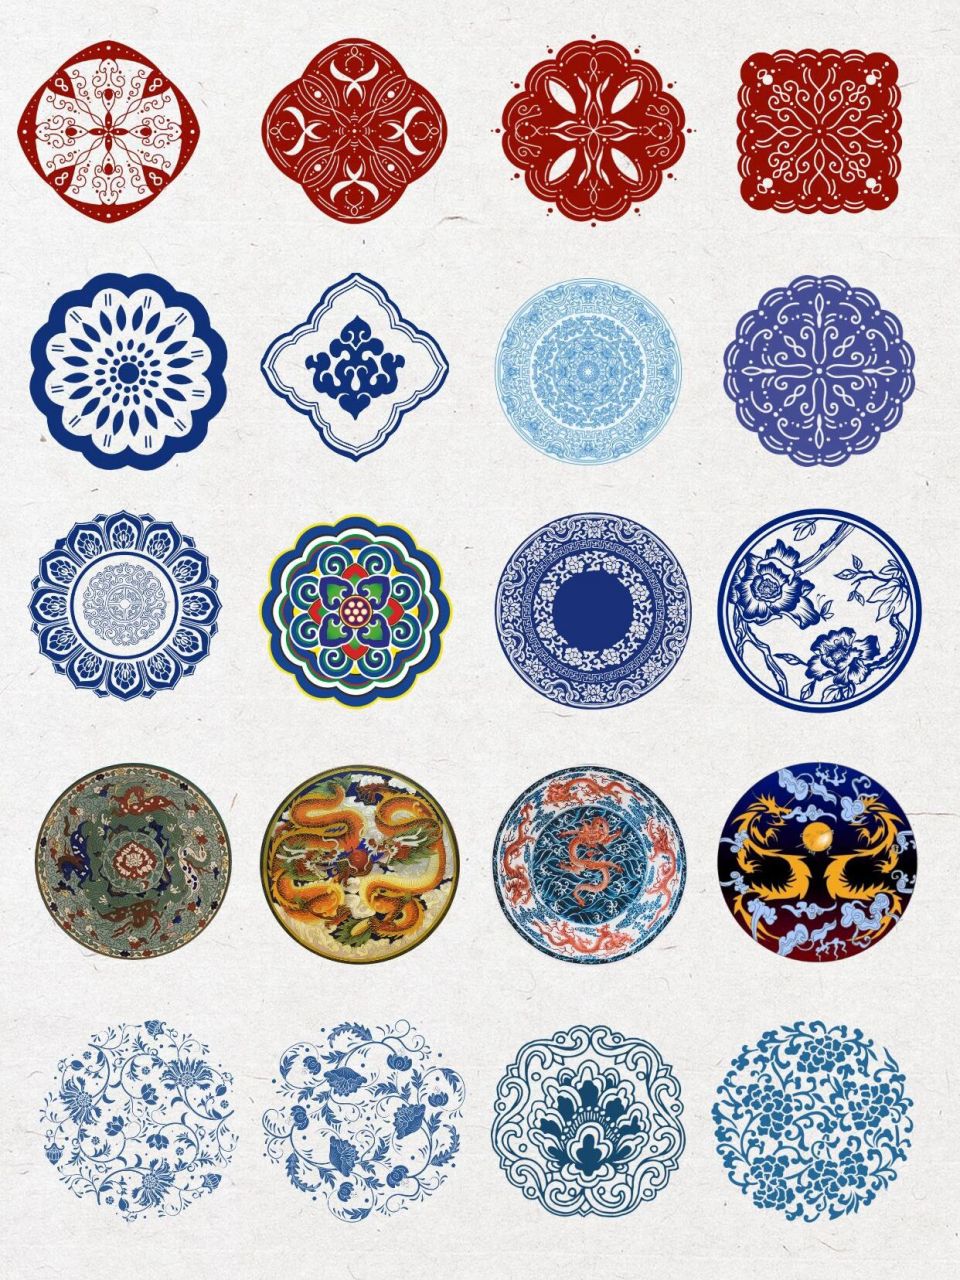 中国传统图案纹样简单图片